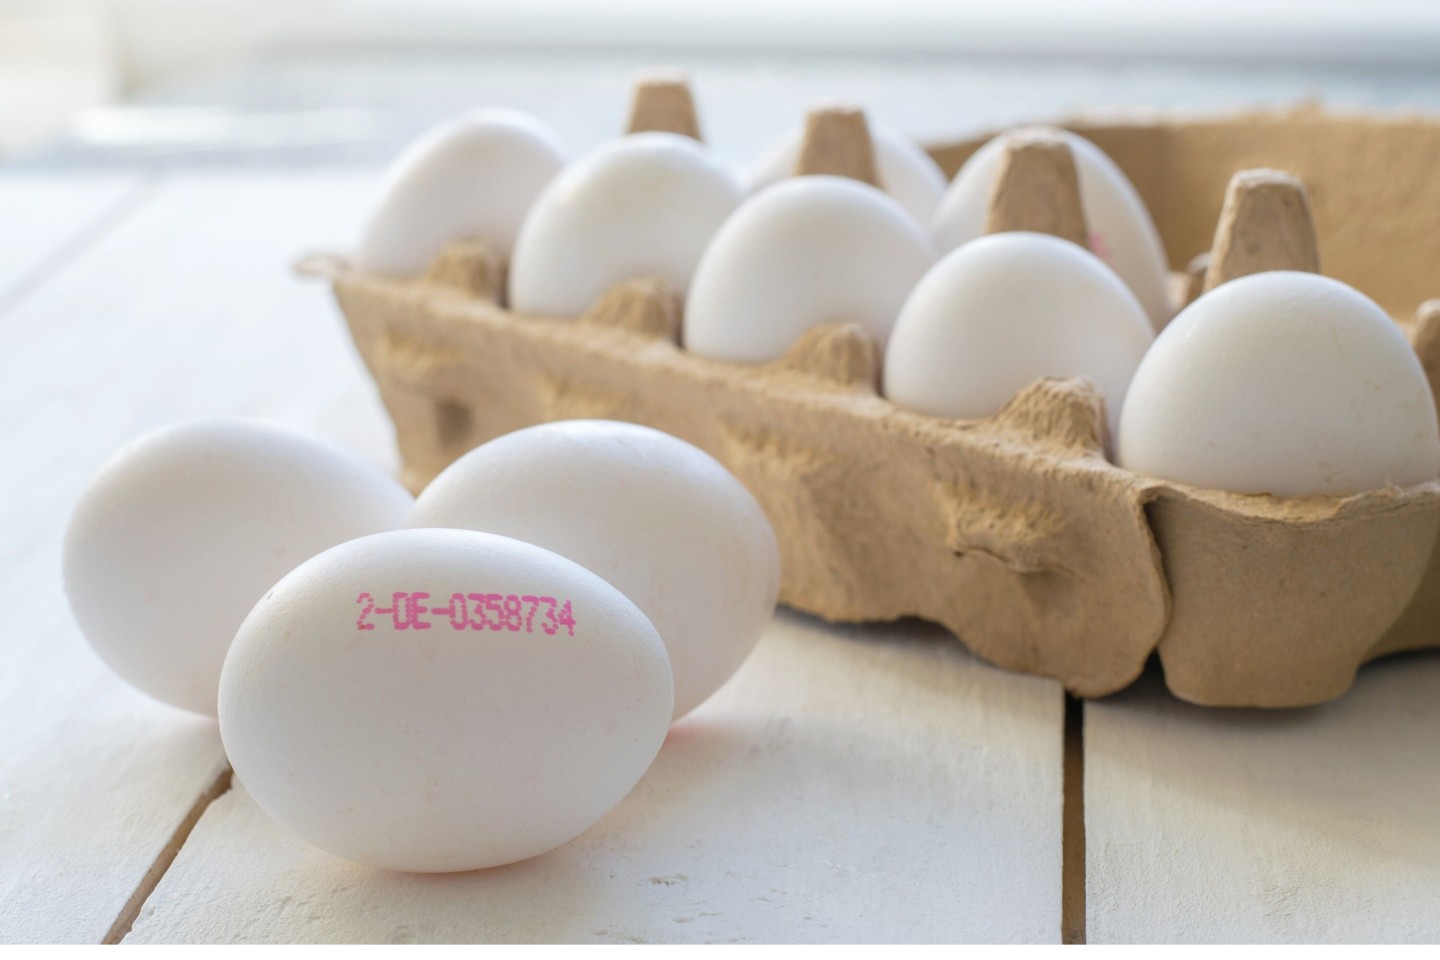 Hoher Eierkonsum zu Ostern im Kreis Höxter: „Unbedingt auf die Kennzeichnung achten“